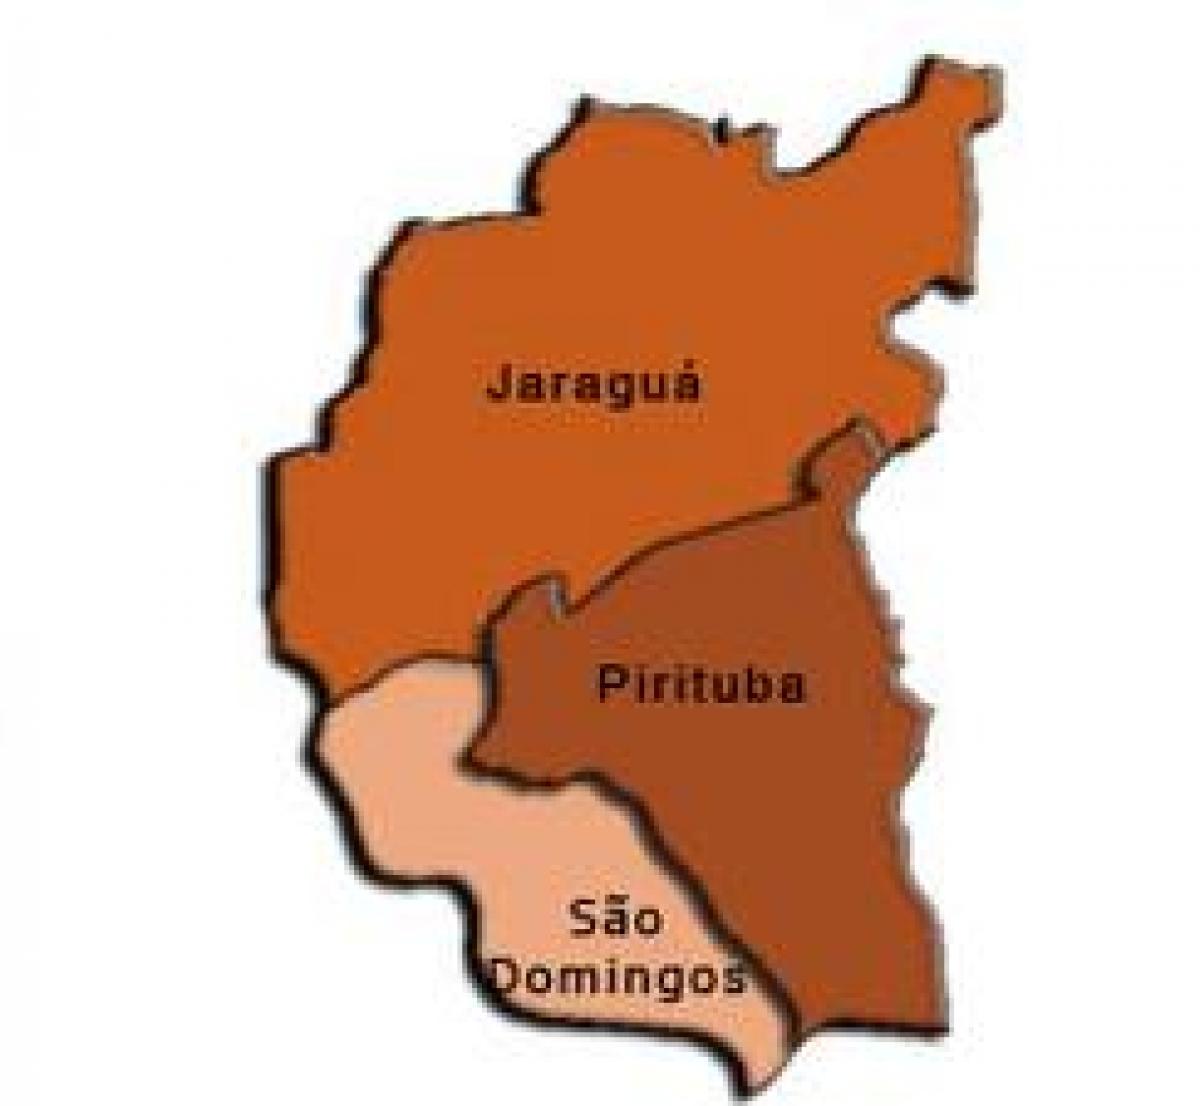 Χάρτης της Pirituba-Jaraguá υπο-νομού